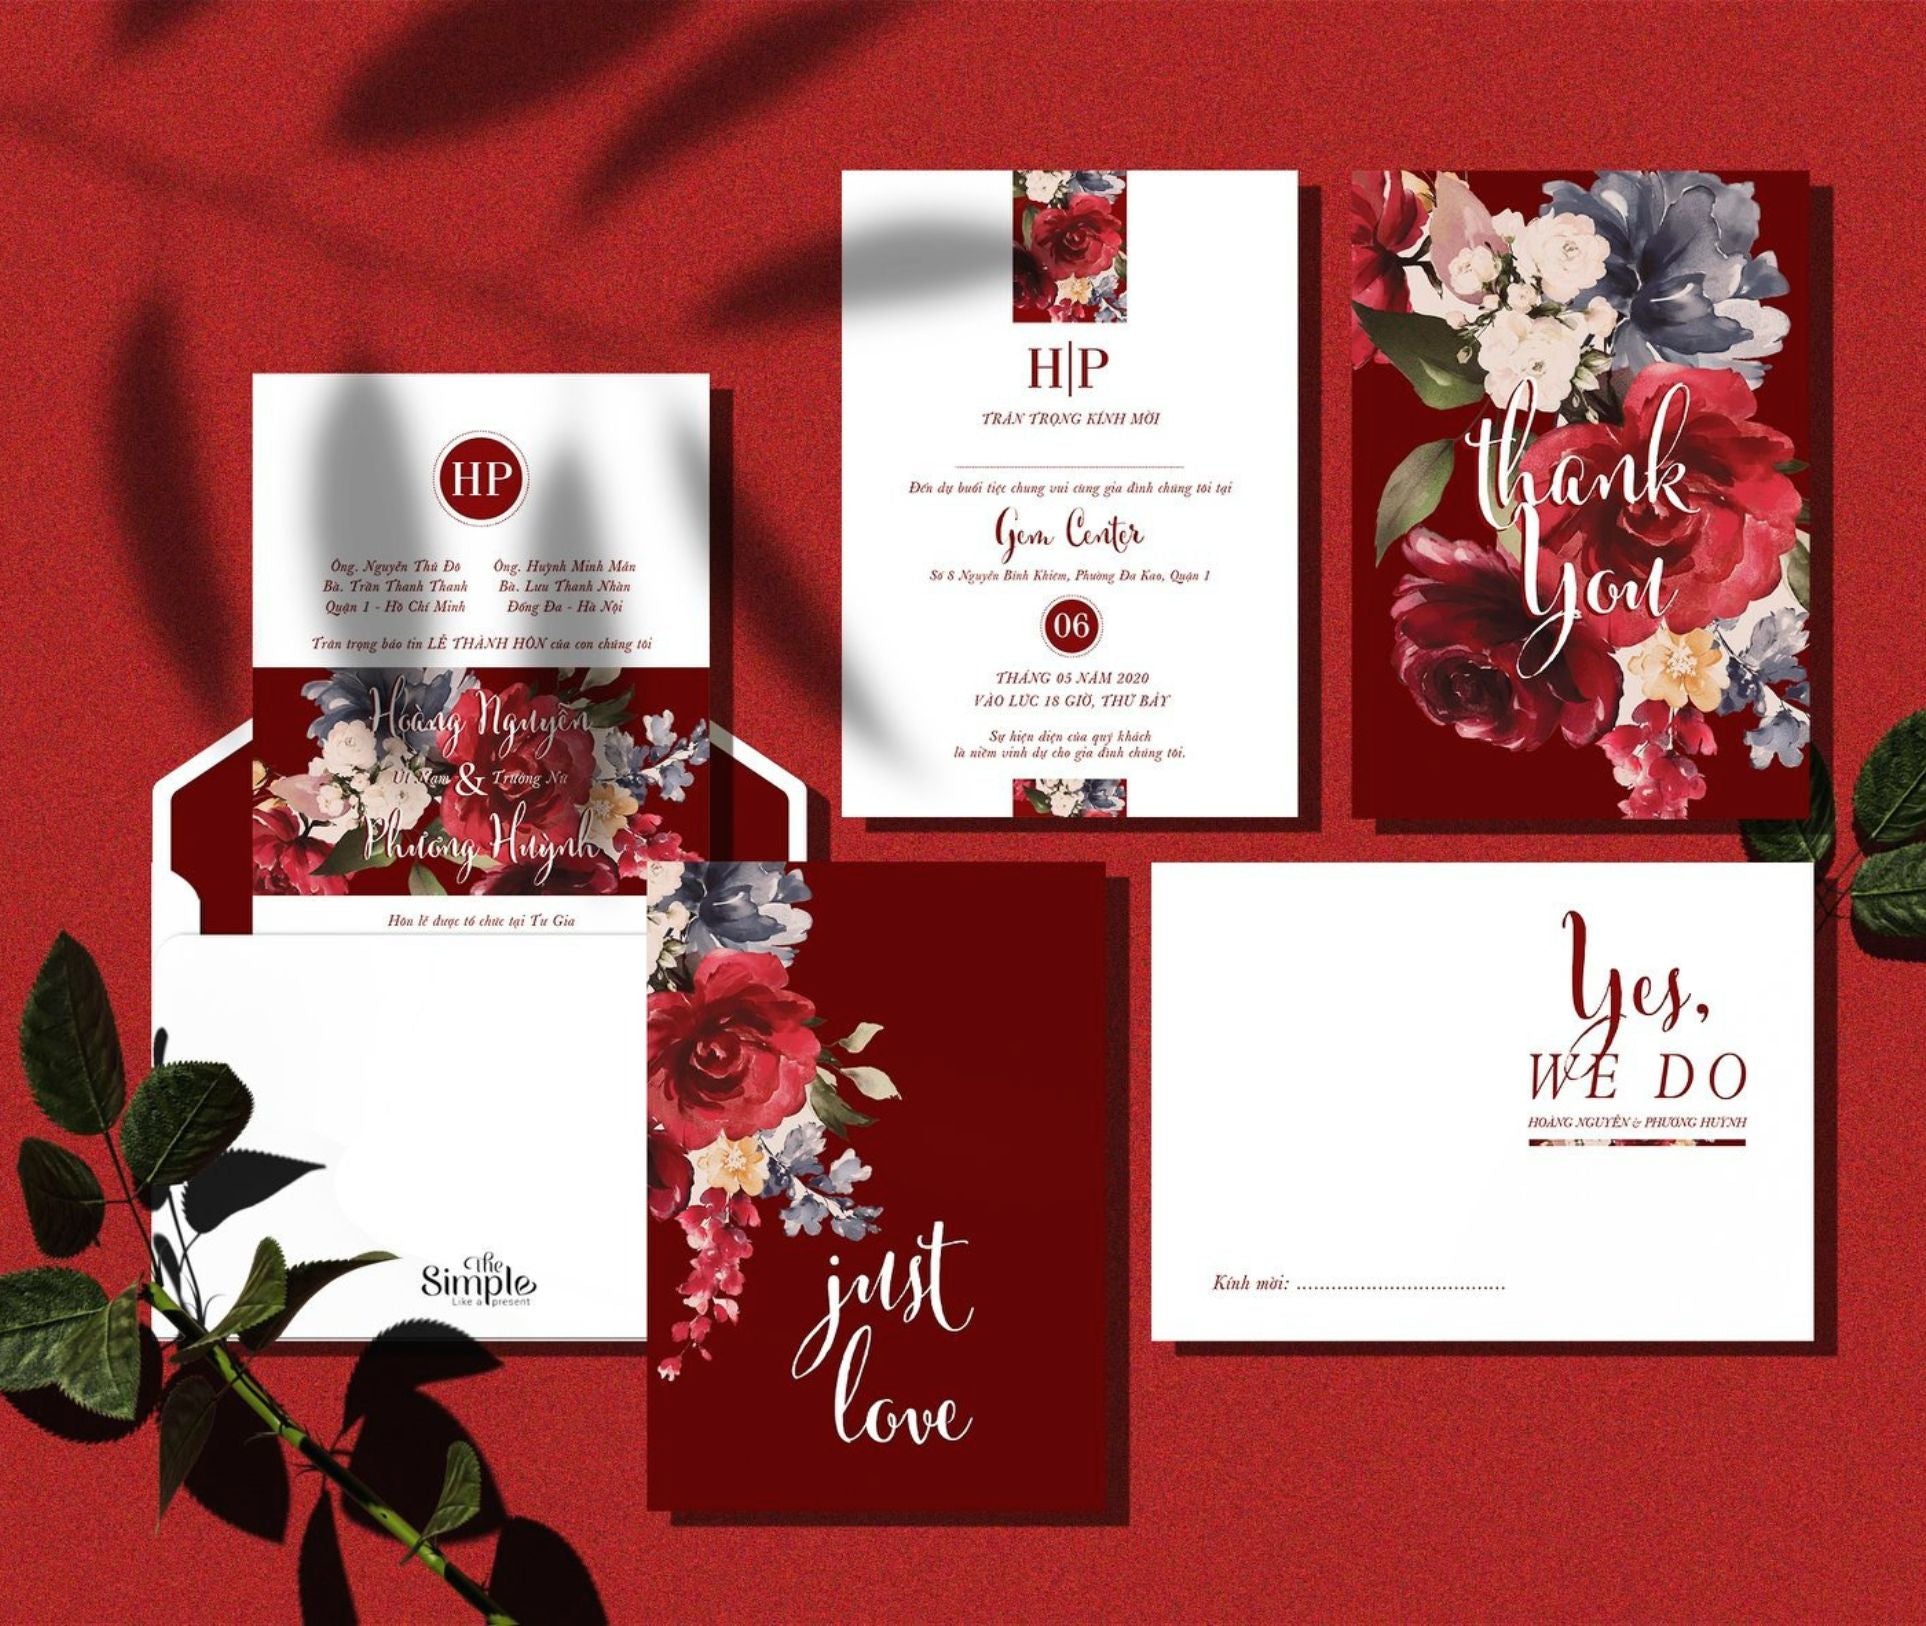 Thiệp cưới đơn giản đẹp: Thiết kế thư giãn và đơn giản đang trở thành trào lưu thiết kế thiệp cưới ở năm